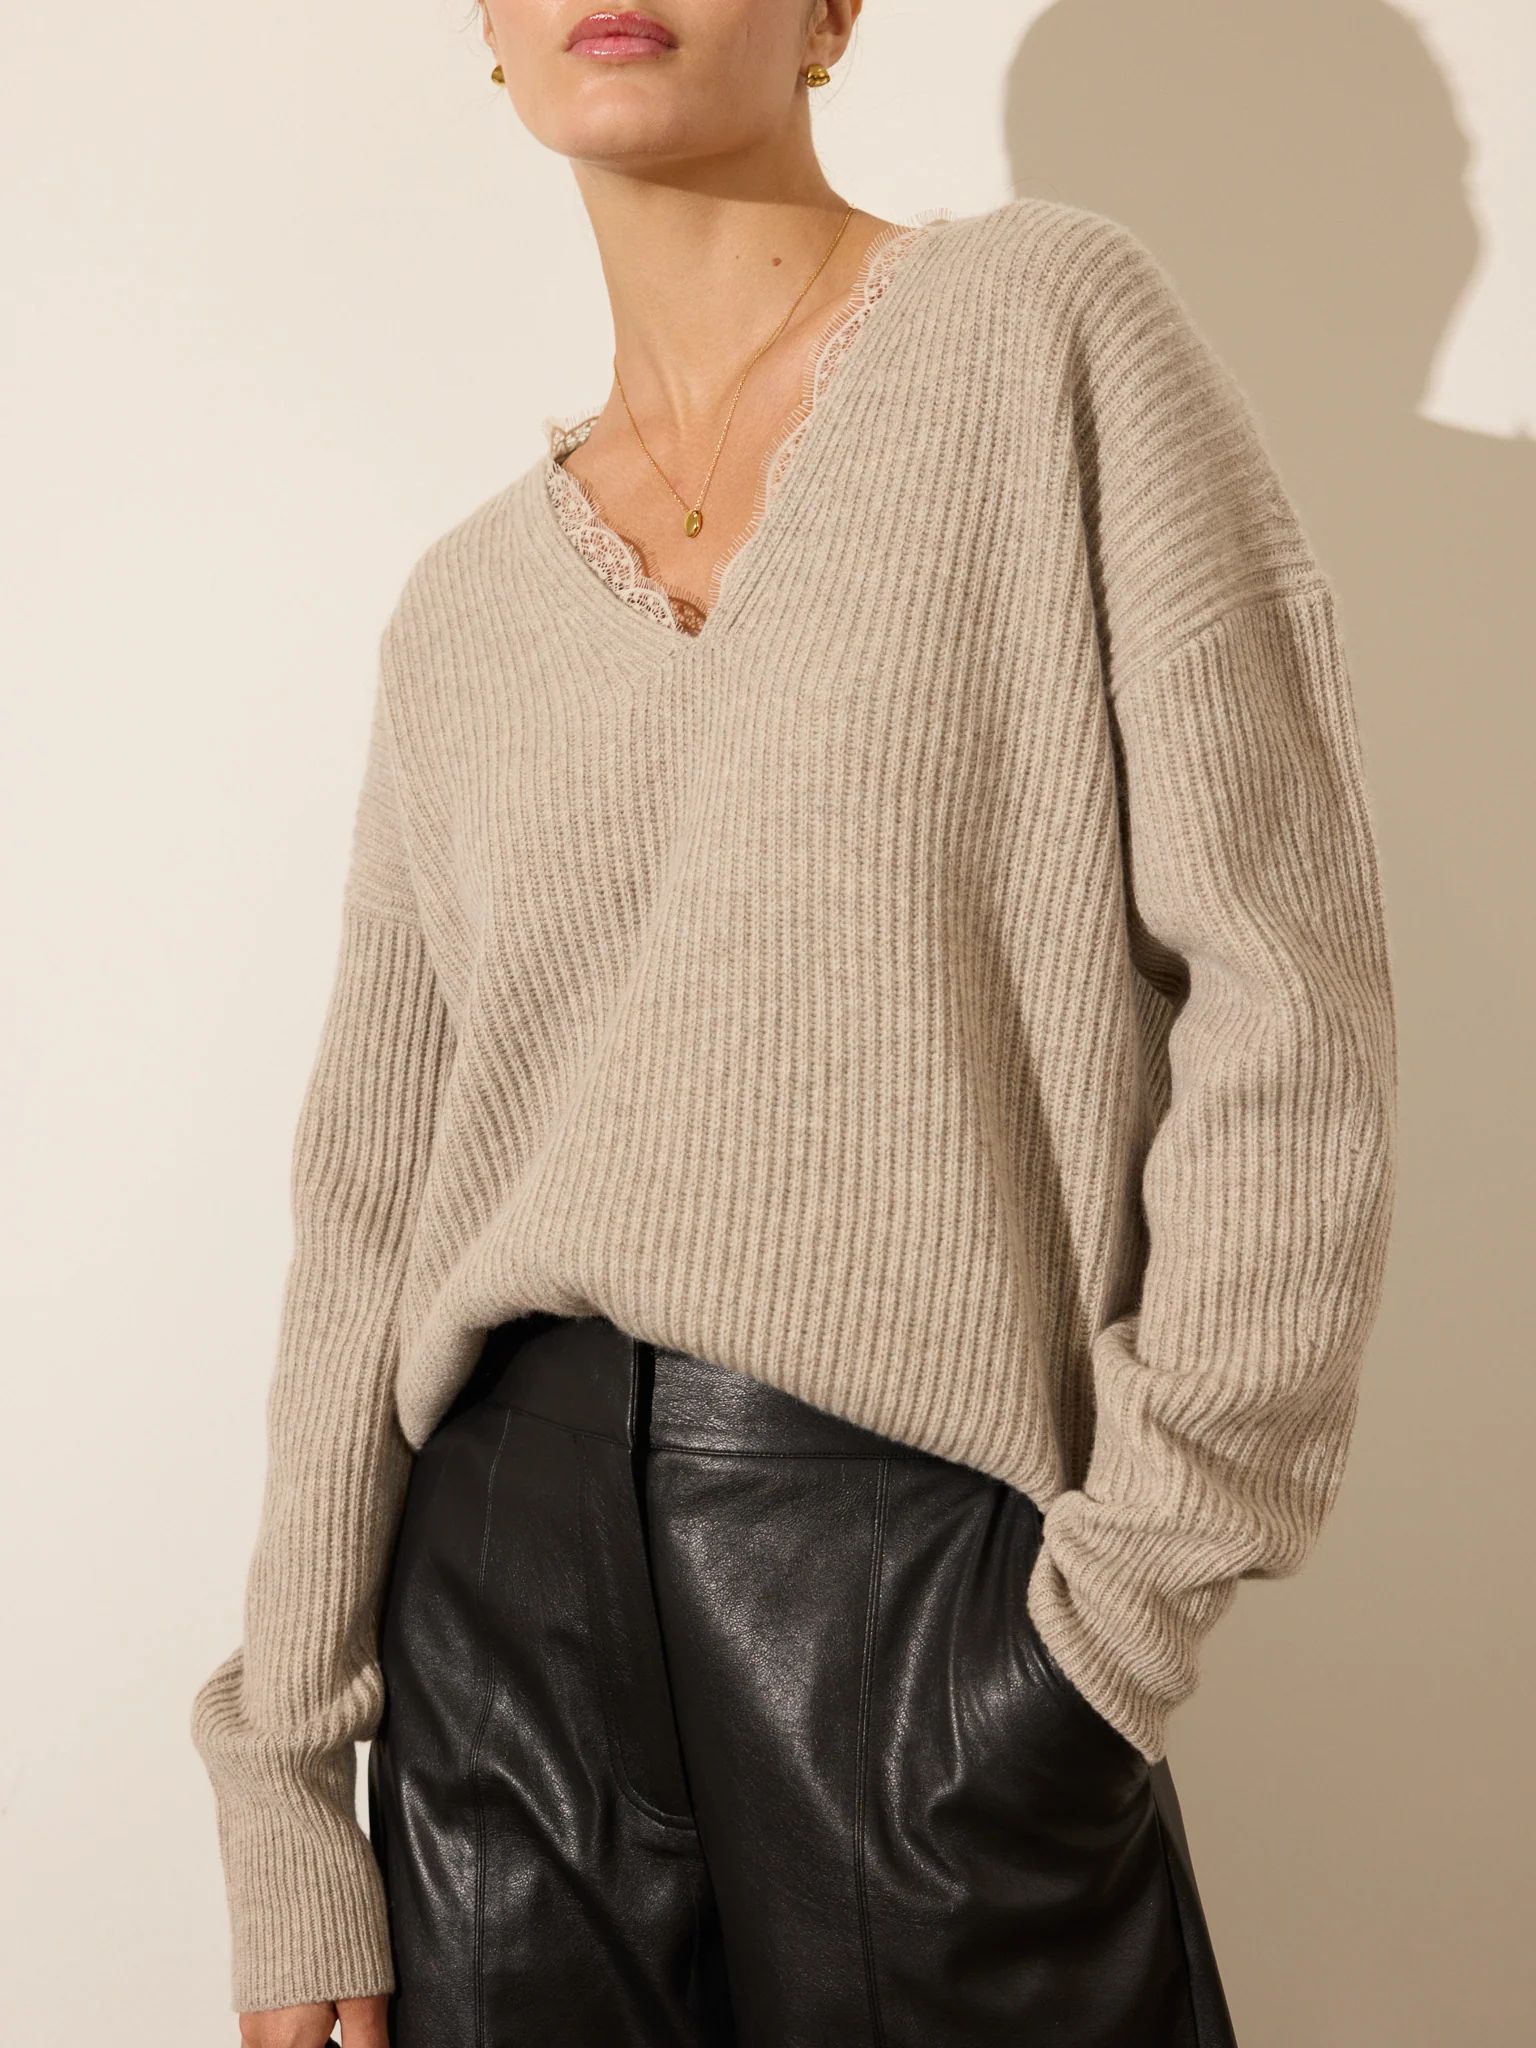 Brochu Walker | Women's Ava Lace V Neck Sweater in Light Chia Mélange Combo | Brochu Walker